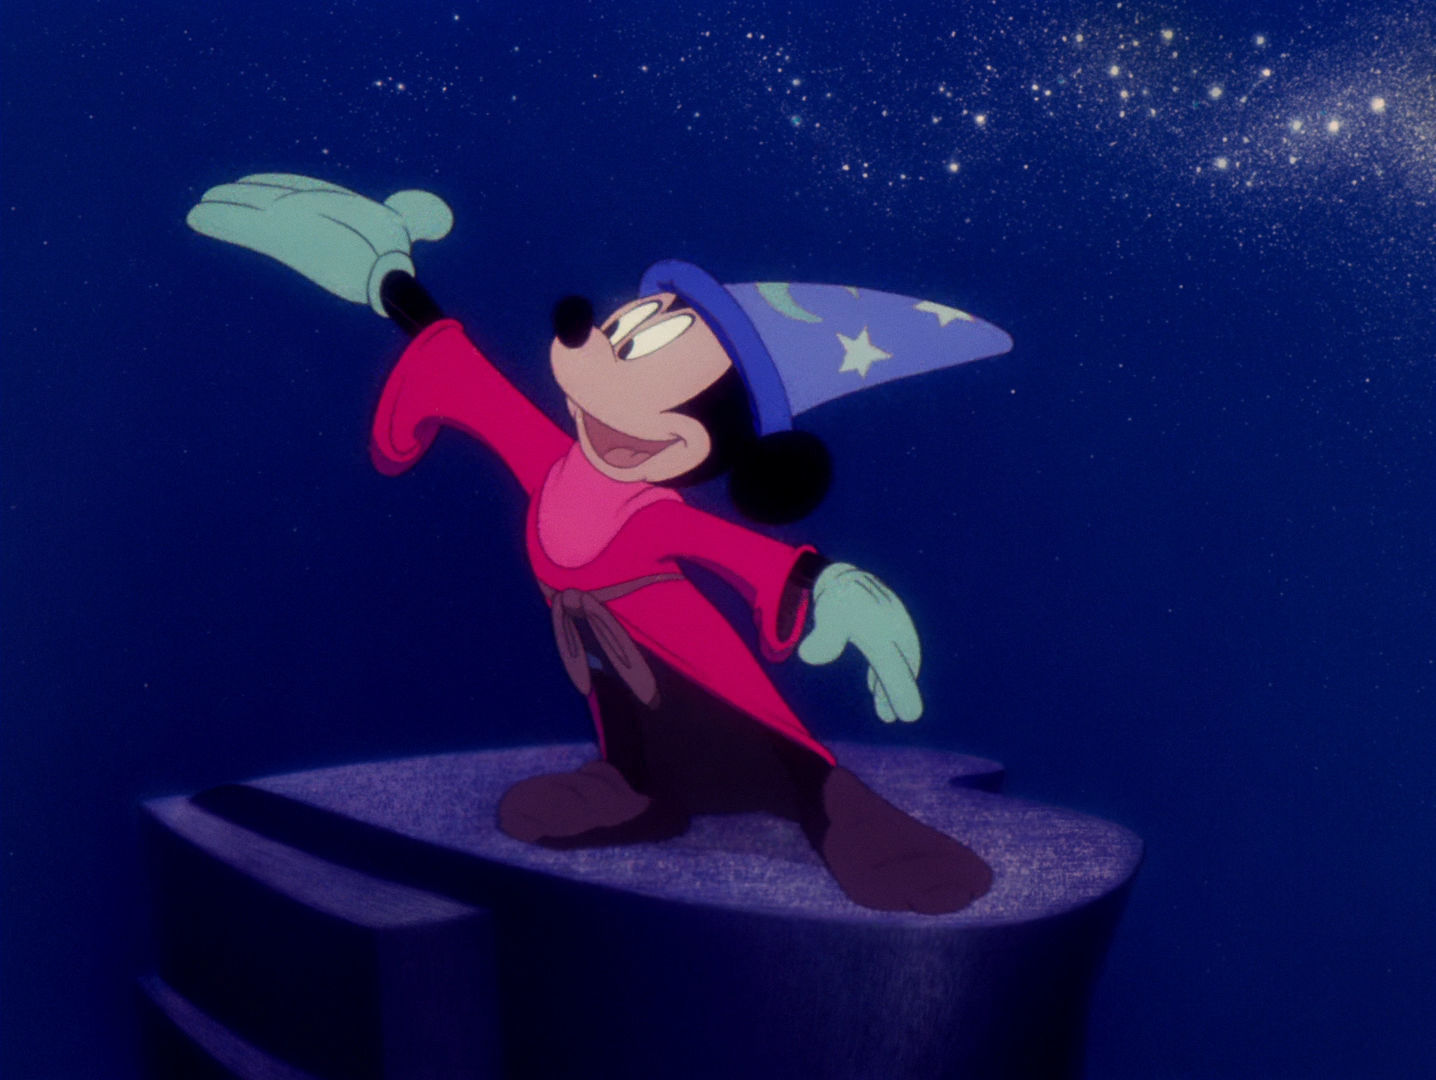 Immagine per Le serate del Piccolo opera festival, il film Fantasia della Disney a Gradisca